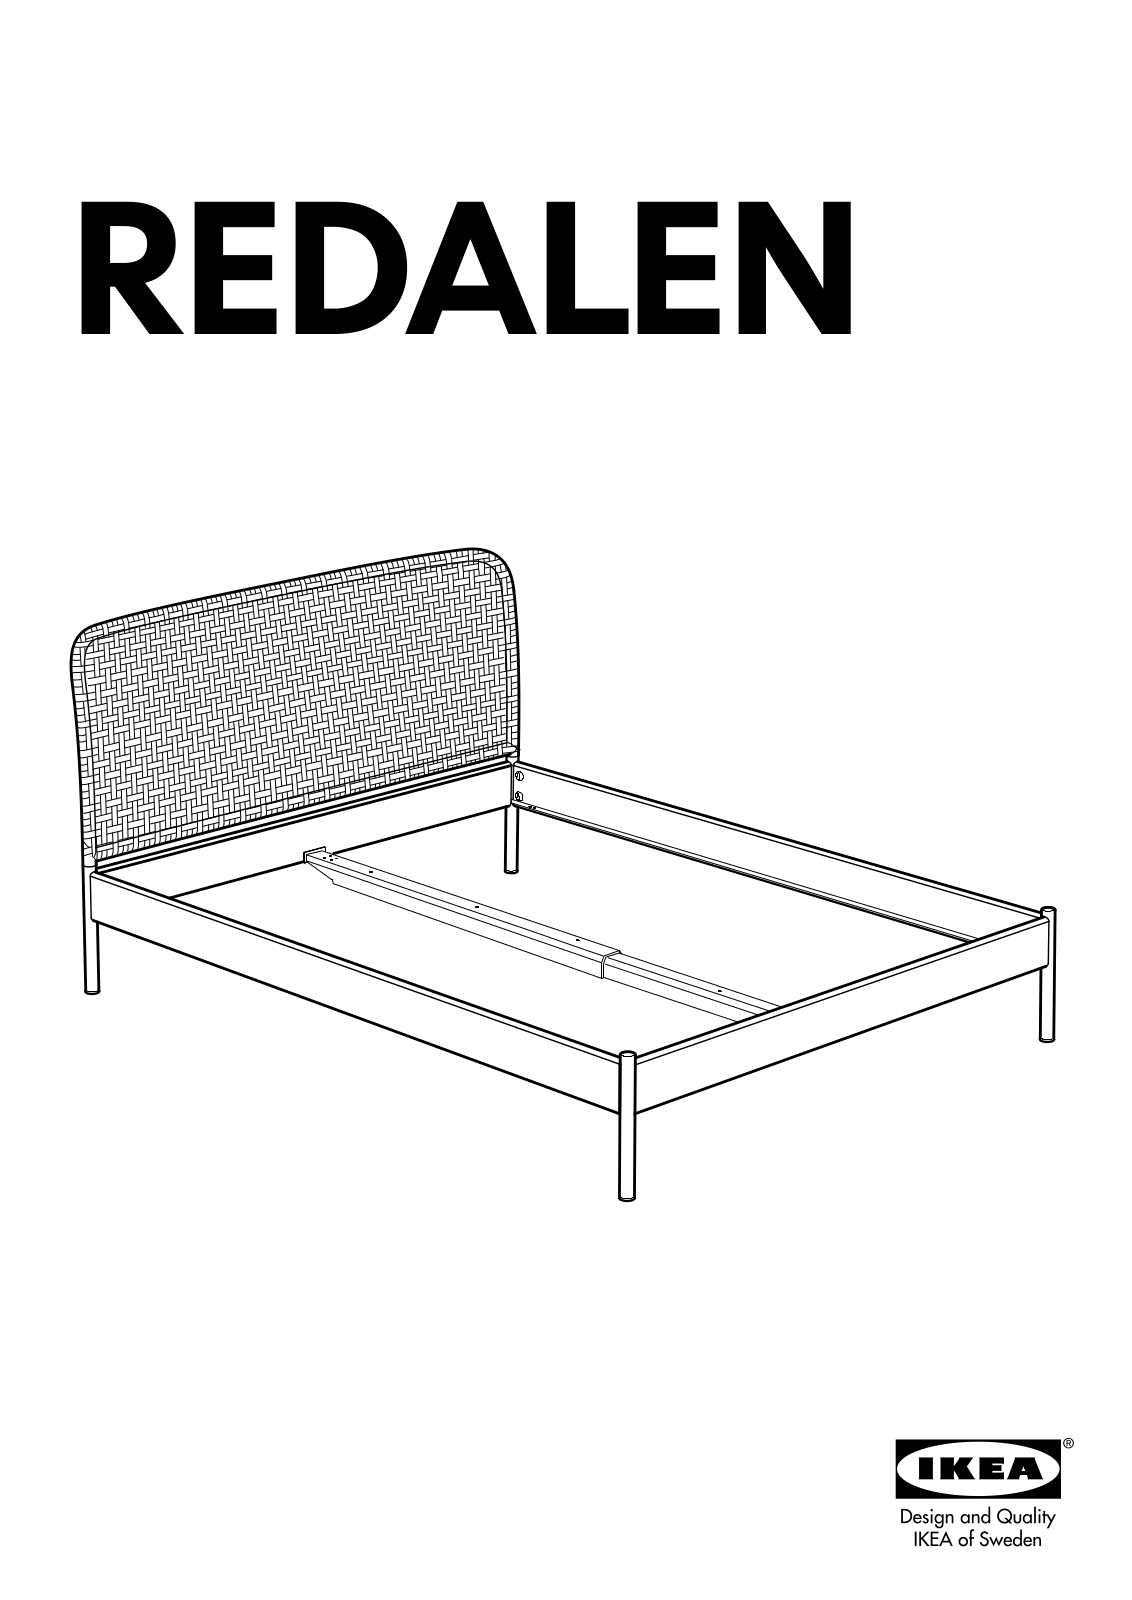 IKEA REDALEN User Manual